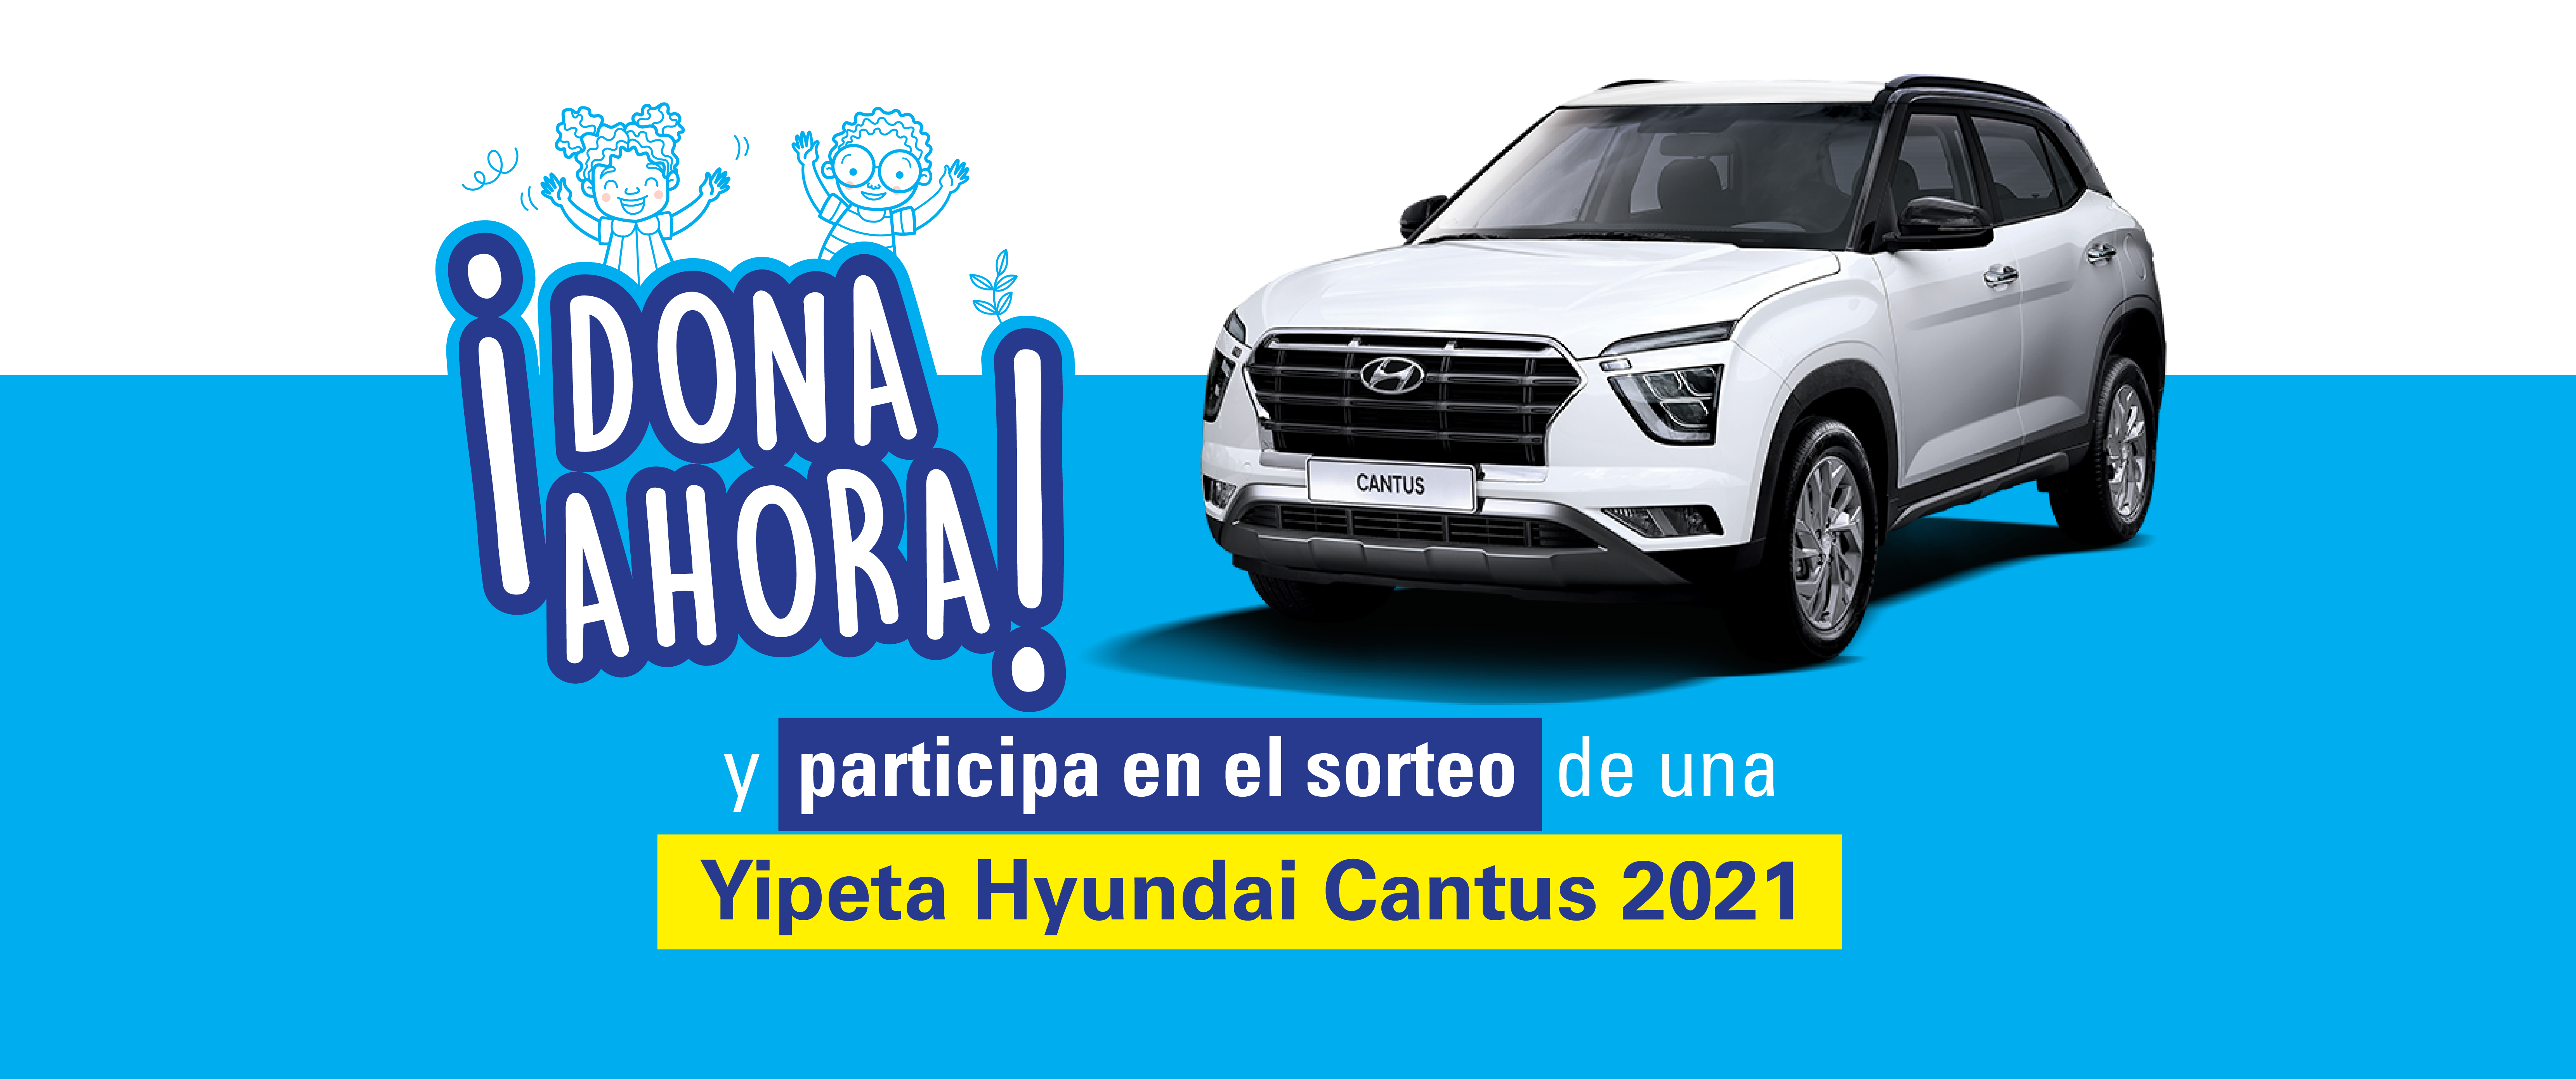 Banner Sorteo Yipeta Hyundai Cantus 2021